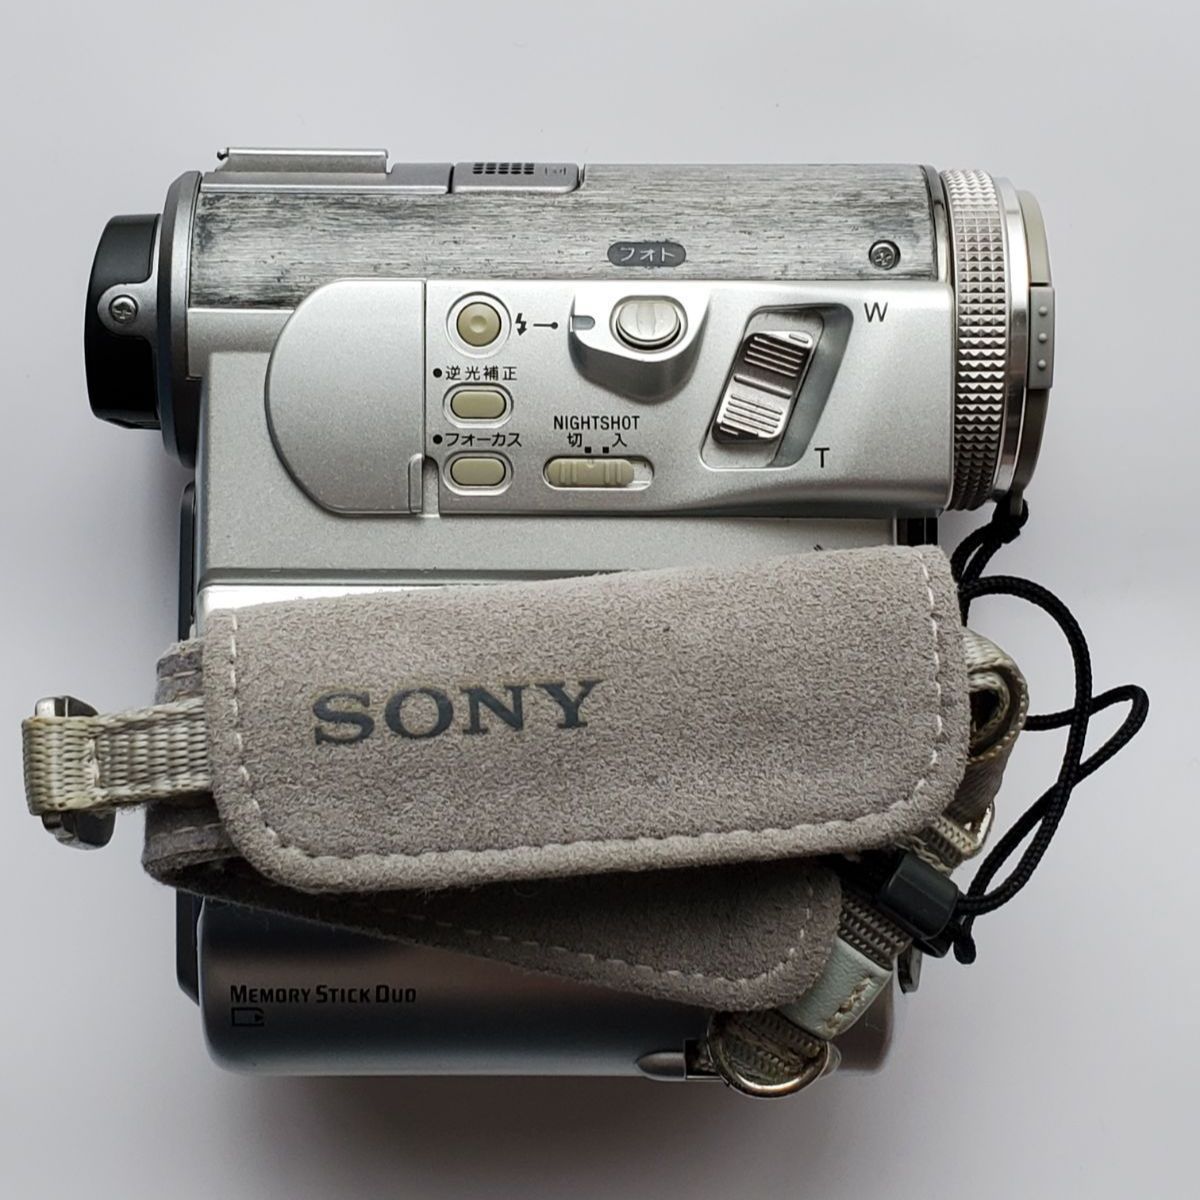 SONY ビデオカメラ SONY DCR-PC350(S) - 雑貨、古本、マンガ、なんでも